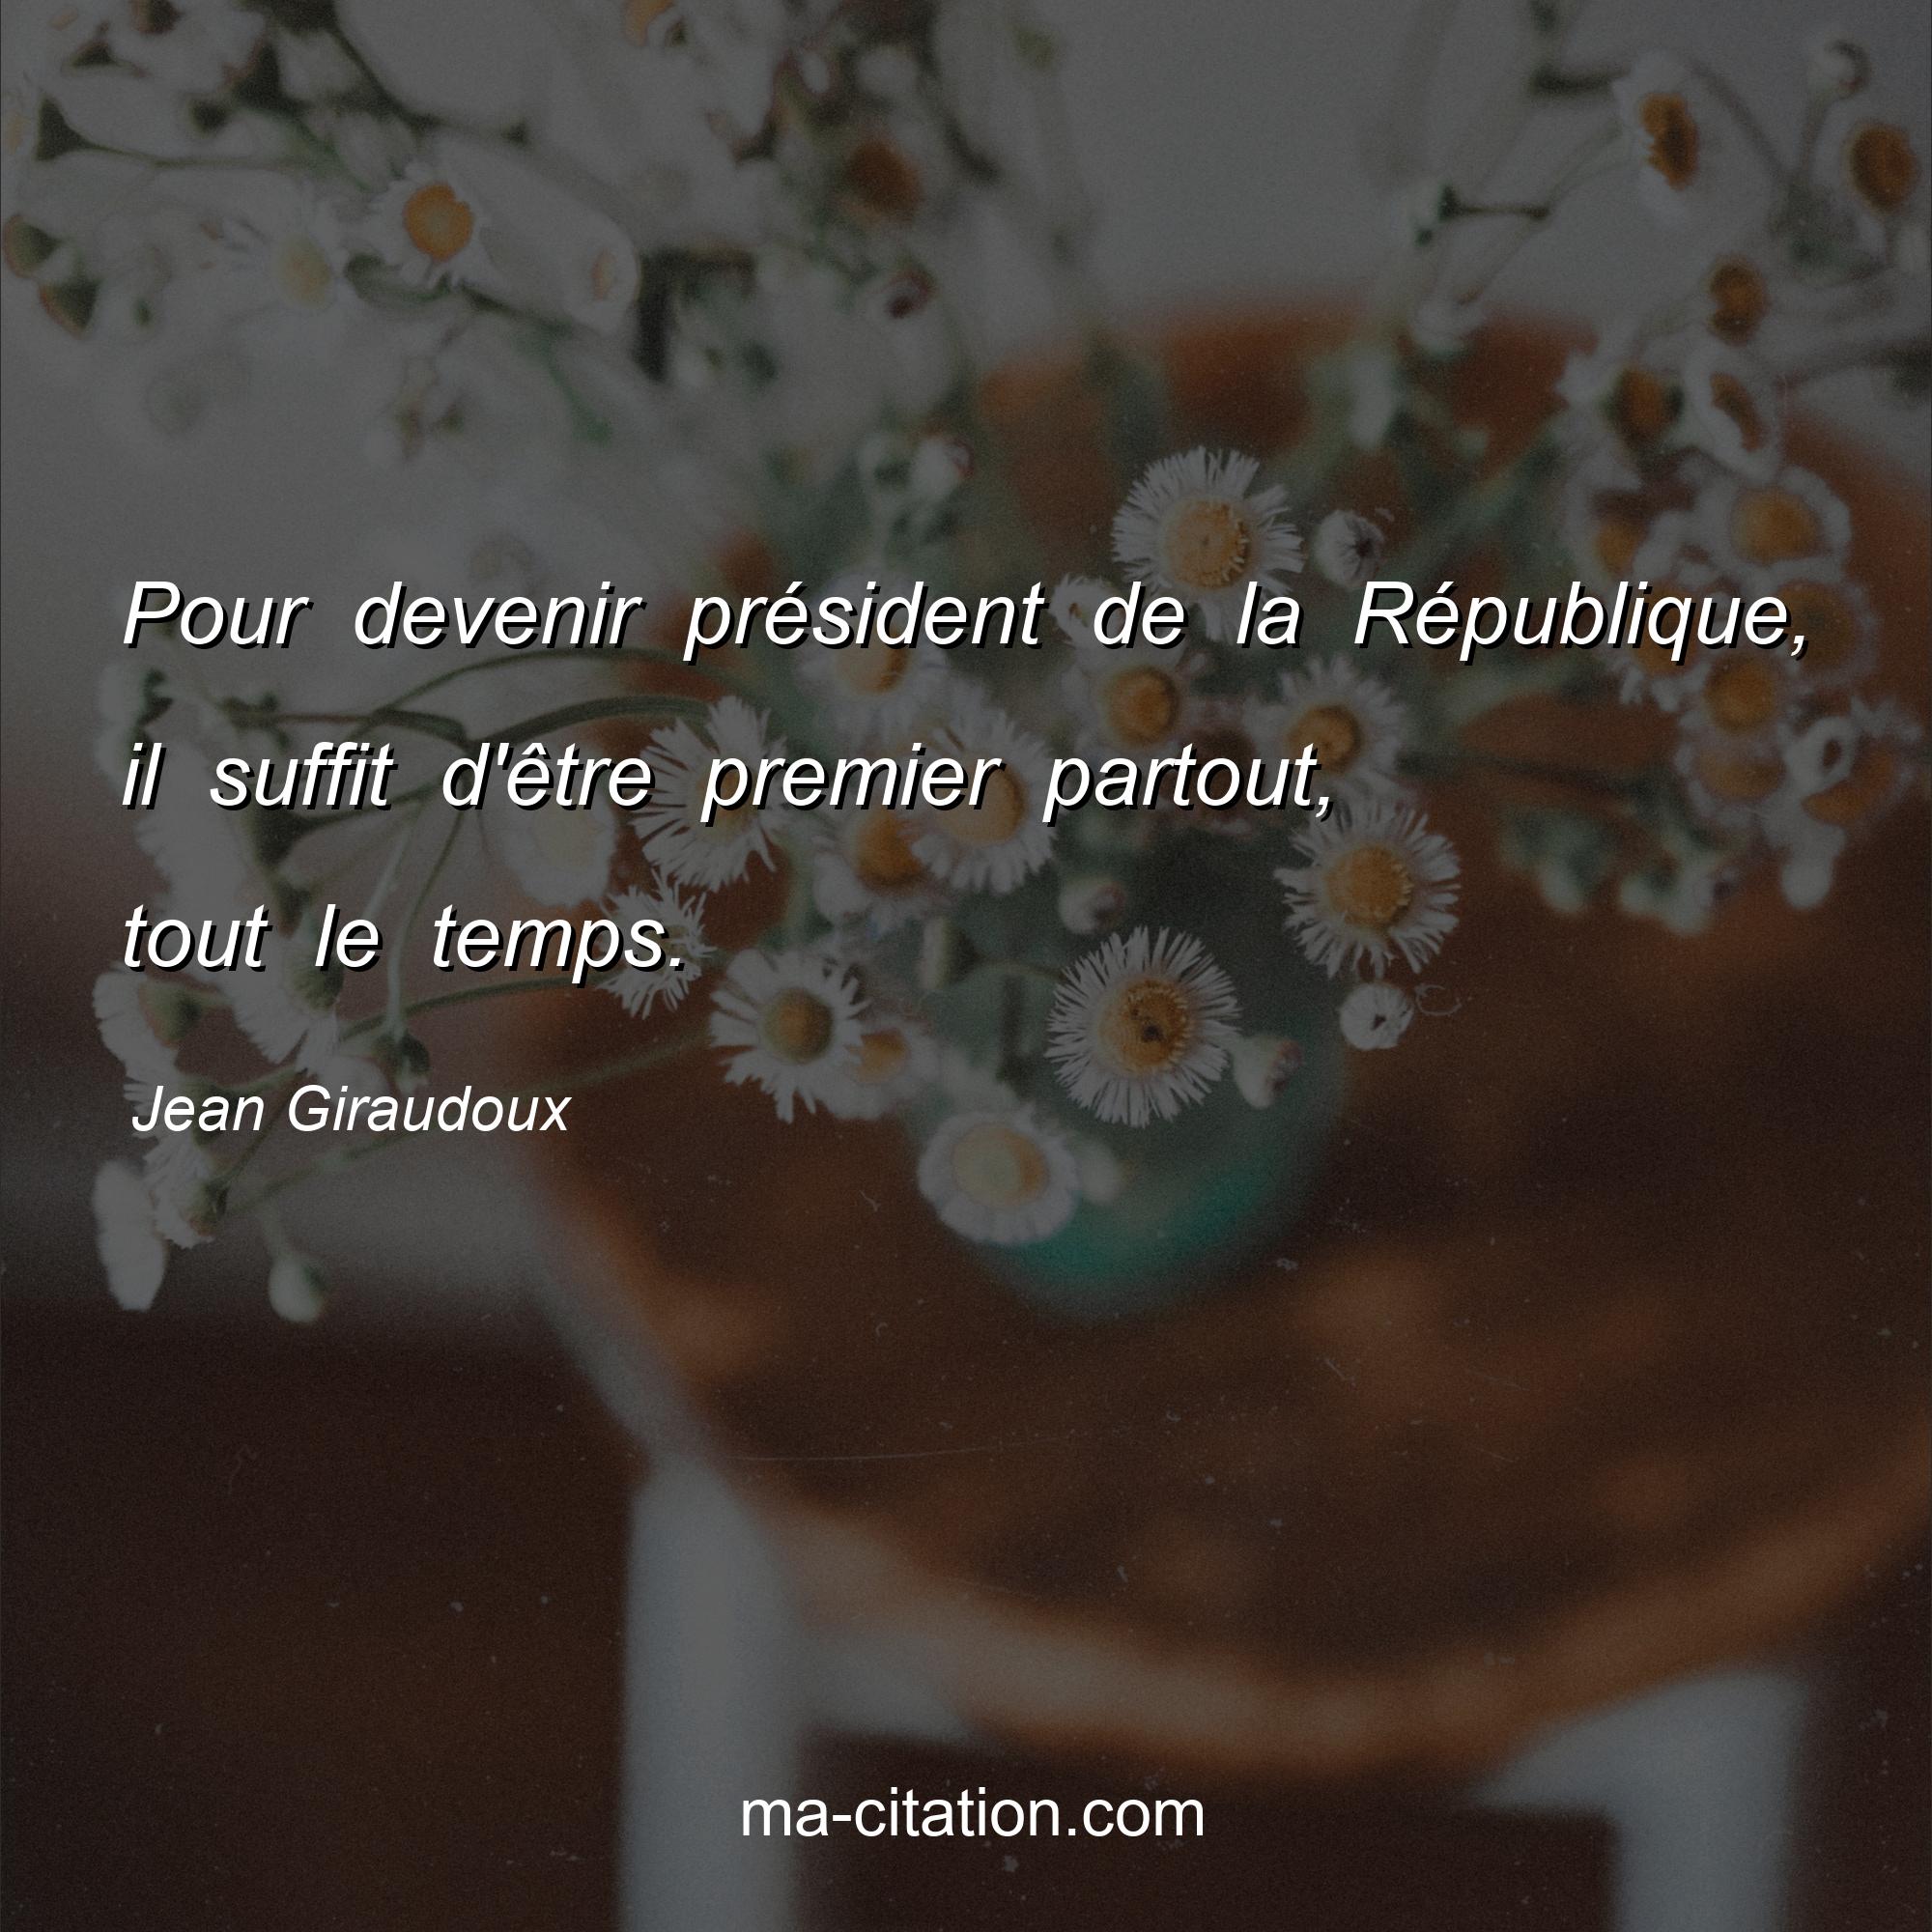 Jean Giraudoux : Pour devenir président de la République, il suffit d'être premier partout, tout le temps.